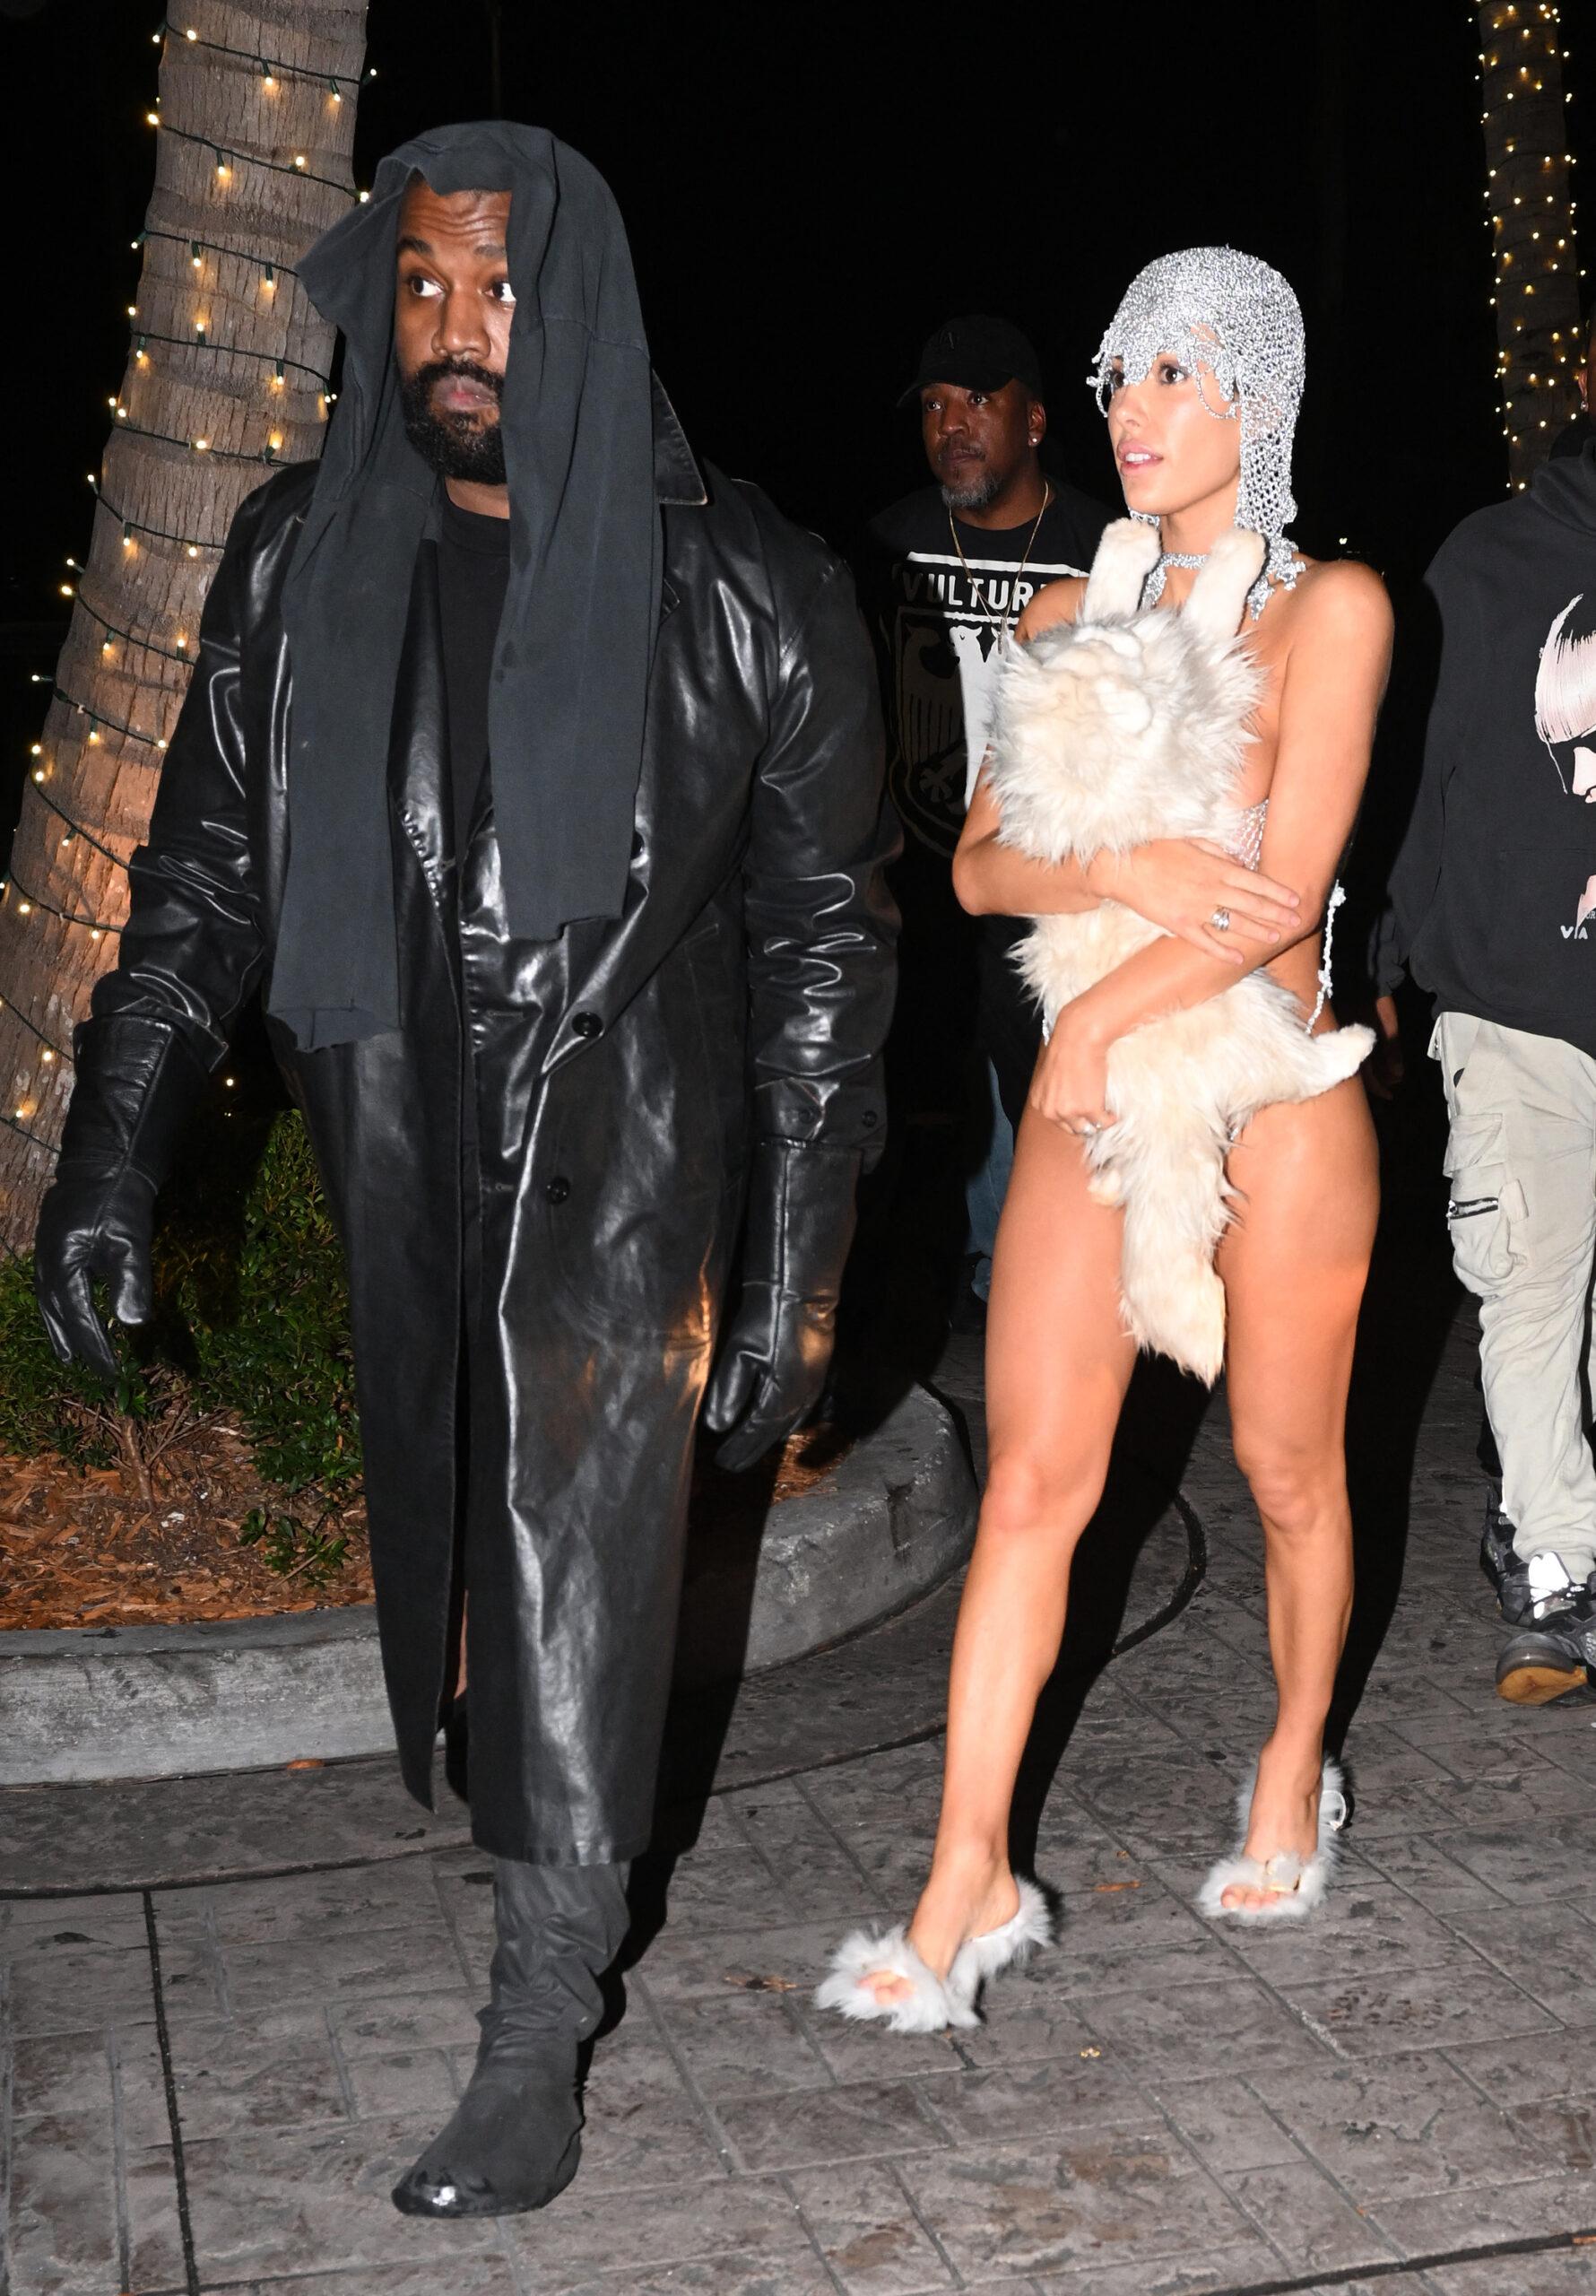 A esposa de Kanye West, Bianca Censori, está quase nua em um conjunto de biquíni prateado de classificação X, coberta apenas com um gato de pelúcia, enquanto a dupla causa um rebuliço na boate LIV, em Miami.